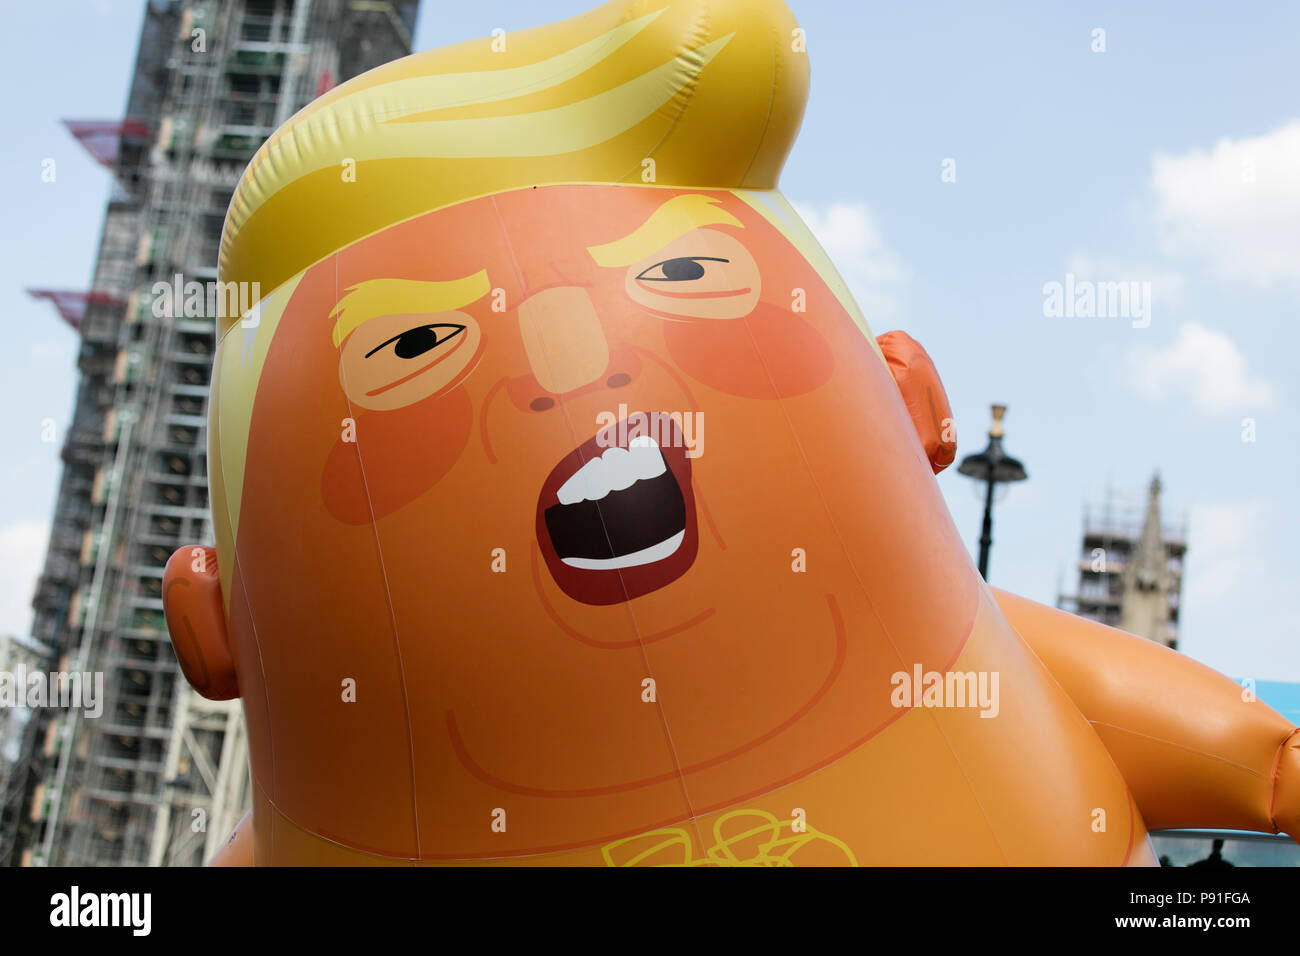 Londra, UK, 14 Luglio 2018: un grande a forma di palloncino come Donald Trump in centro a Londra durante la protesta contro il Presidente Trump's visita alla UK Credit: goccia di inchiostro/Alamy Live News Foto Stock